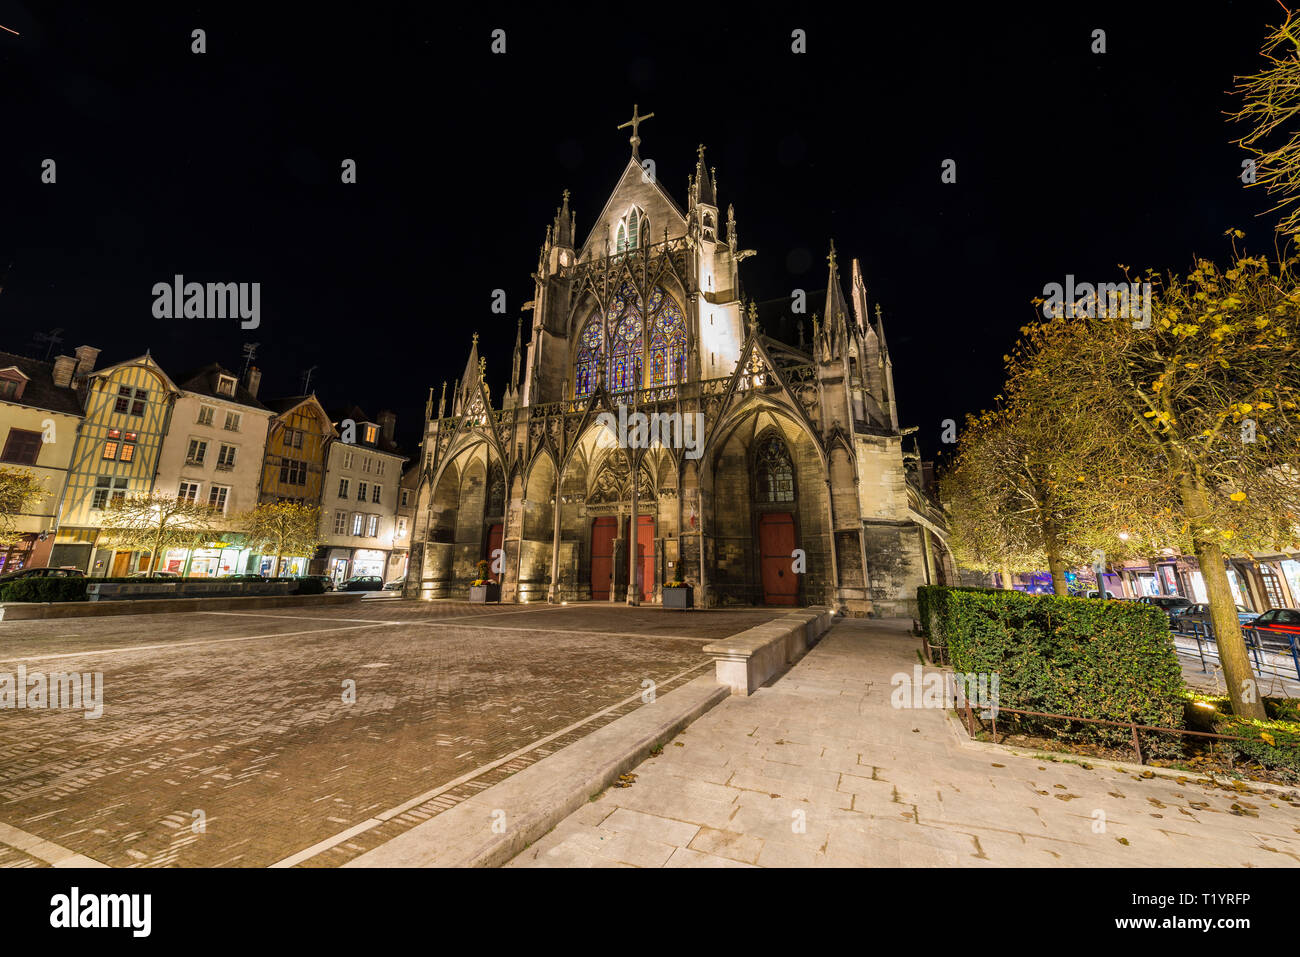 Basilica di Sant'Urbano di Troyes (Francia nord-orientale): la vista esterna del classico edificio gotico in piazza 'luogo' Vernier, la sera. Foto Stock